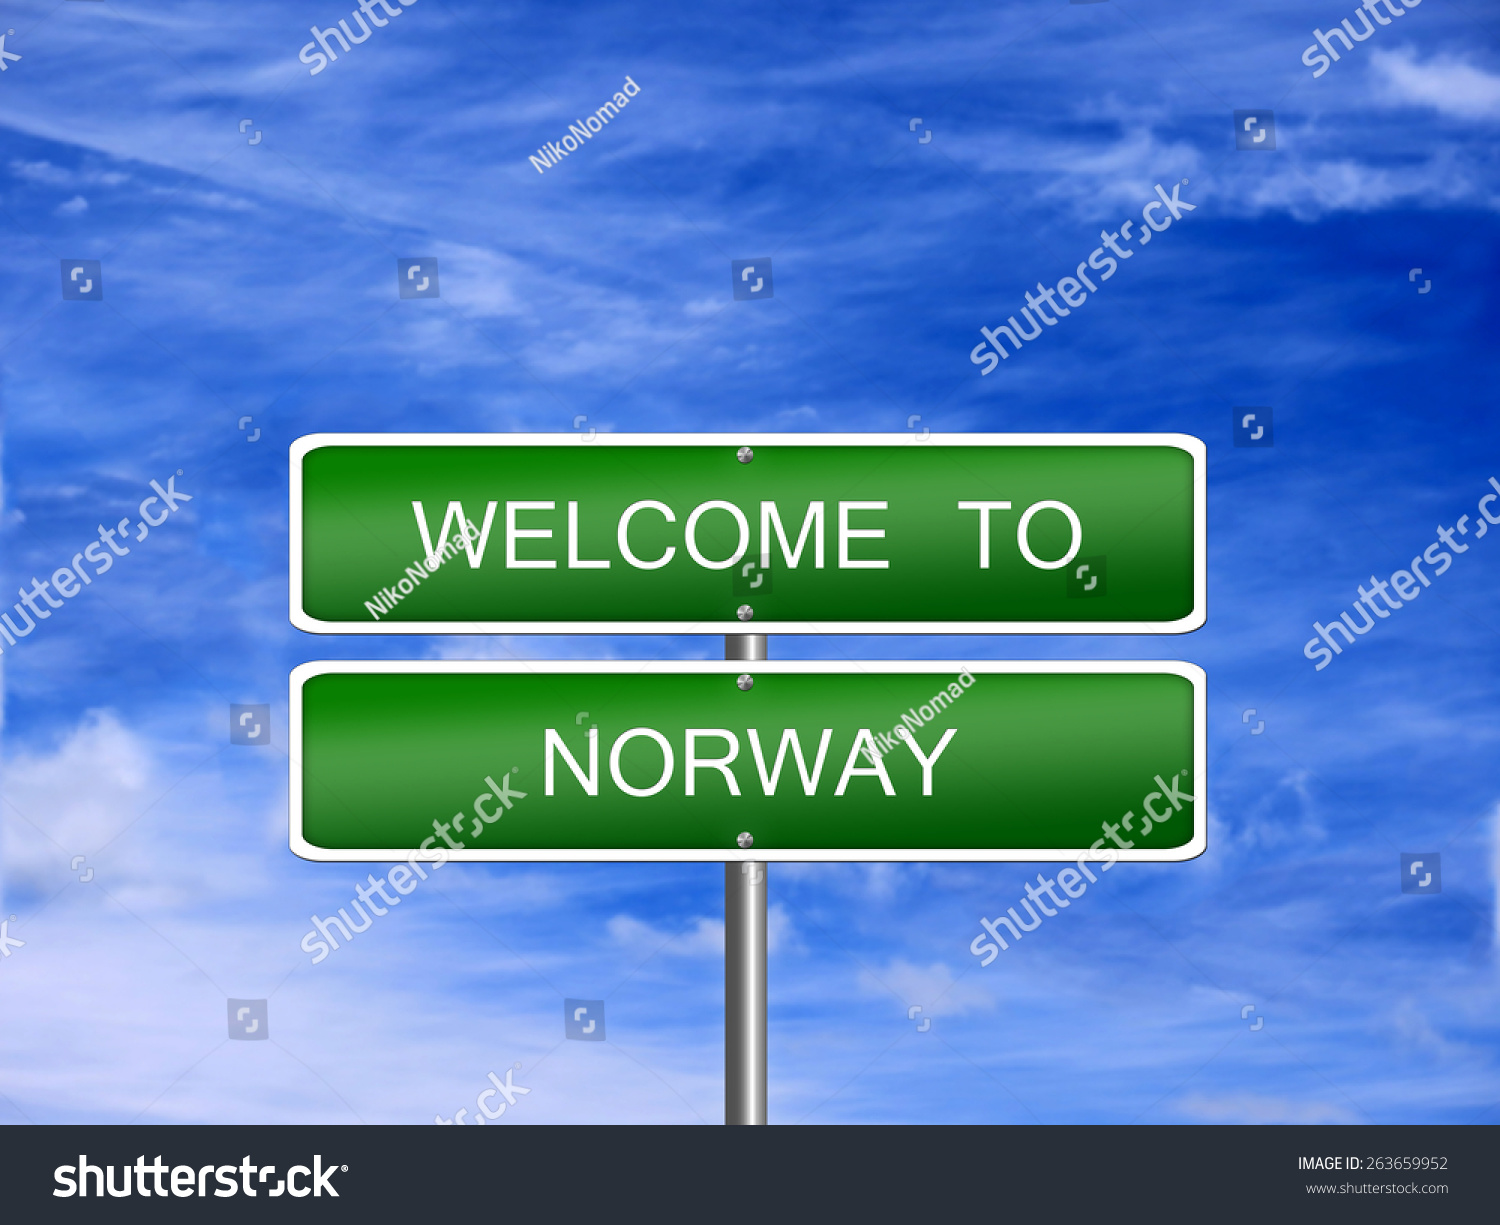 Norwegian Welcome Board